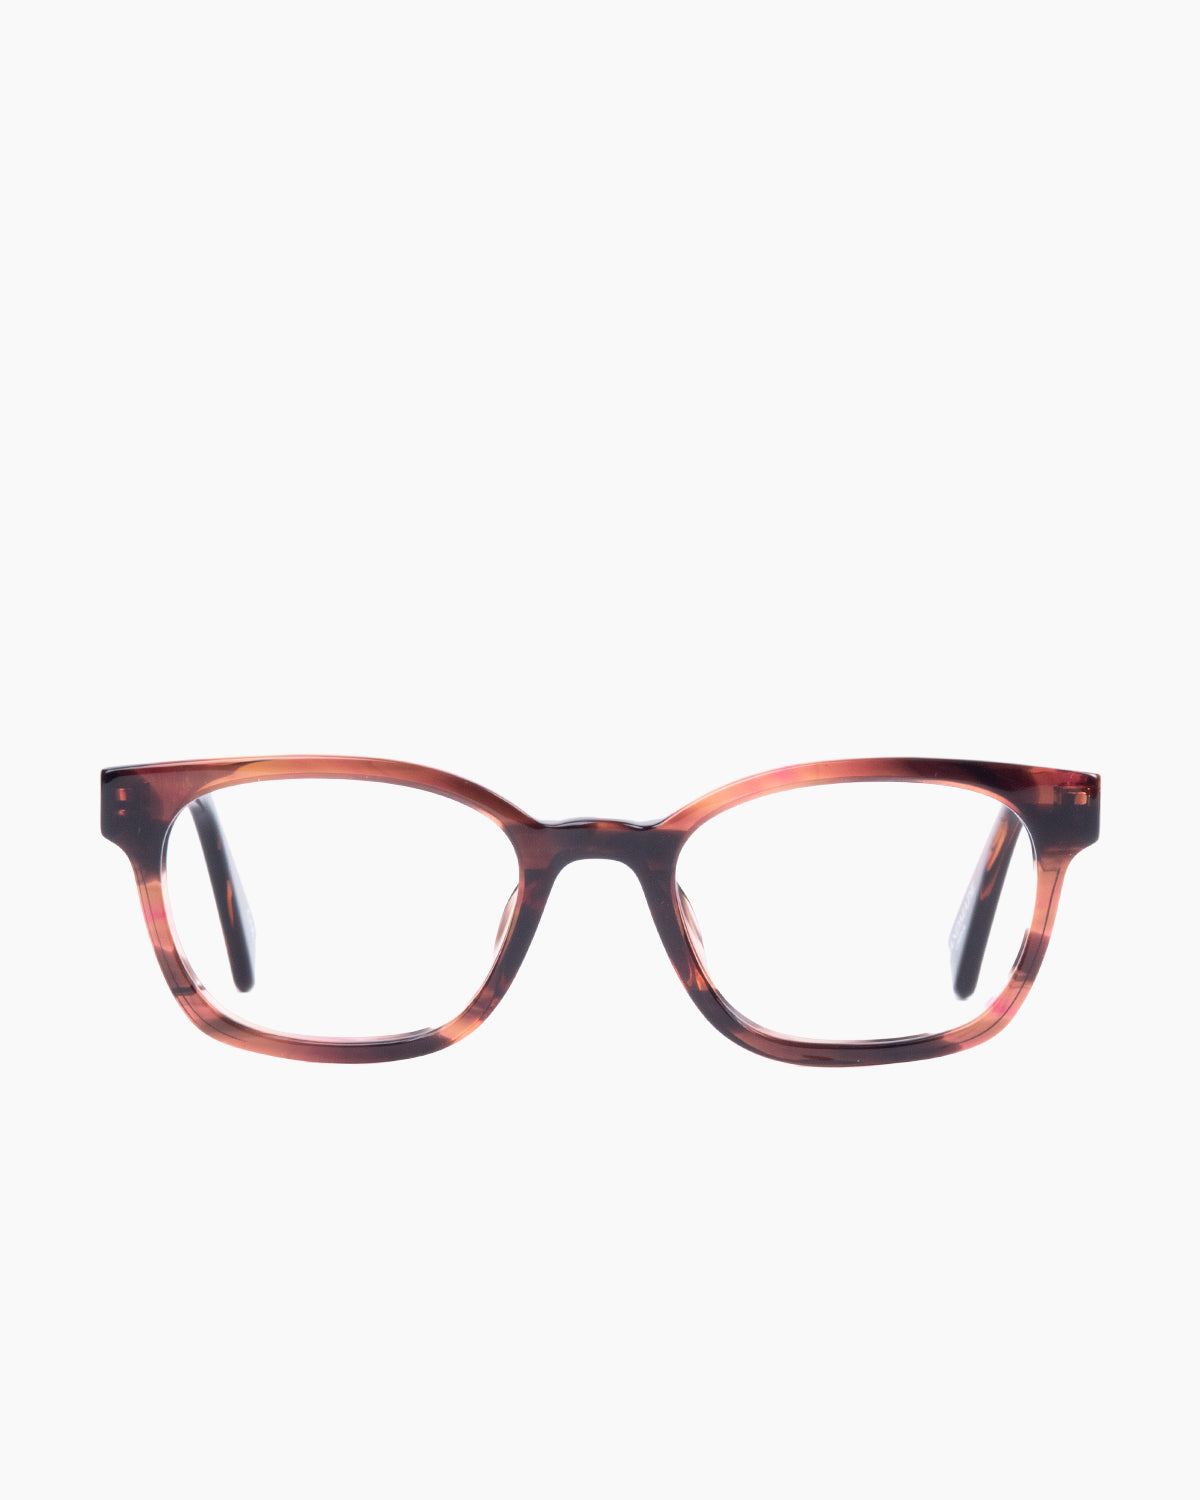 Evolve-Benz-135 | glasses bar:  Marie-Sophie Dion